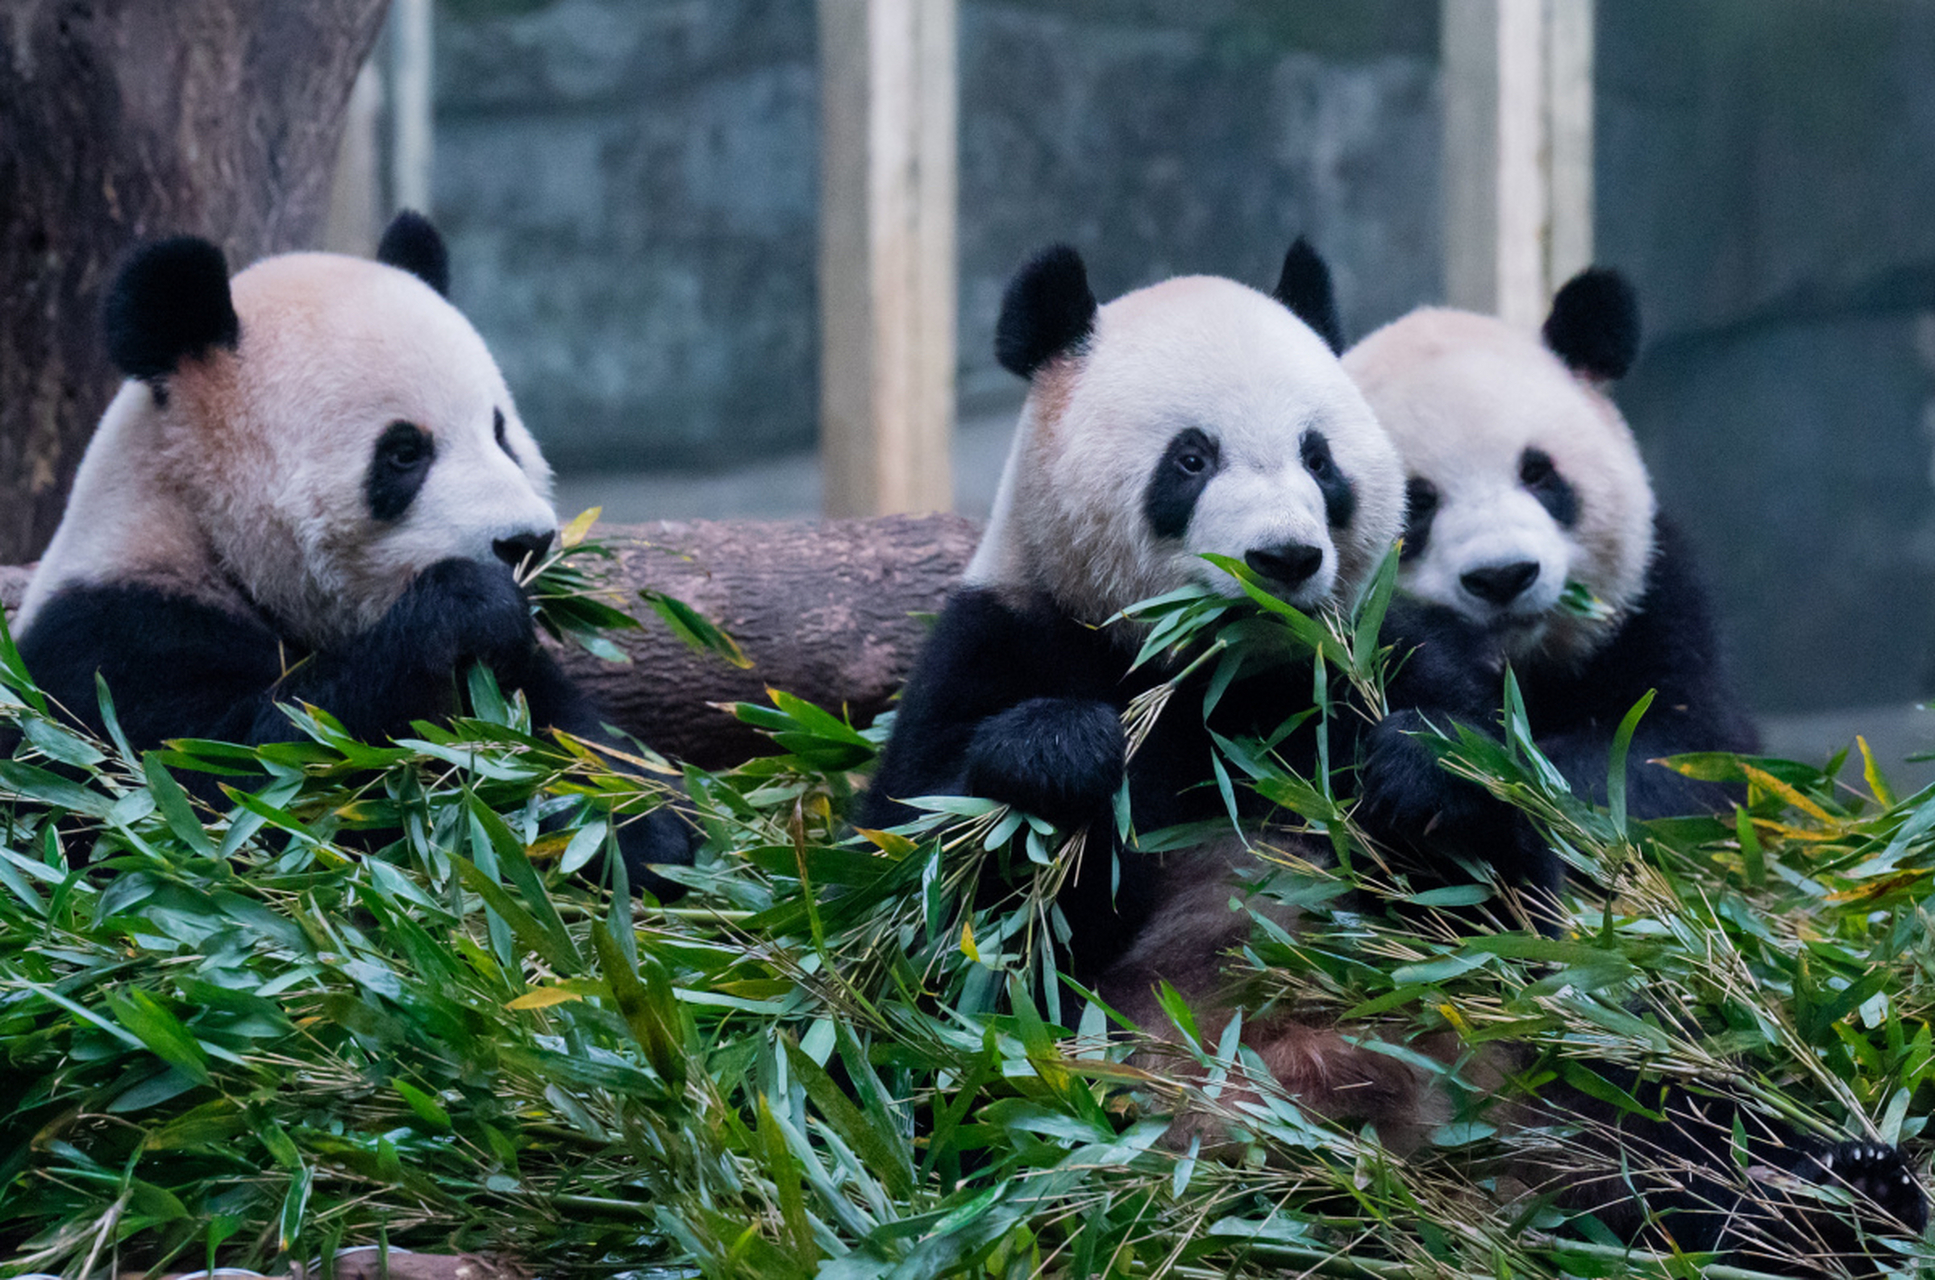 熊猫的竹子迷宫  小圆圆住在一个竹林旁边的山洞里,它每天都会来到